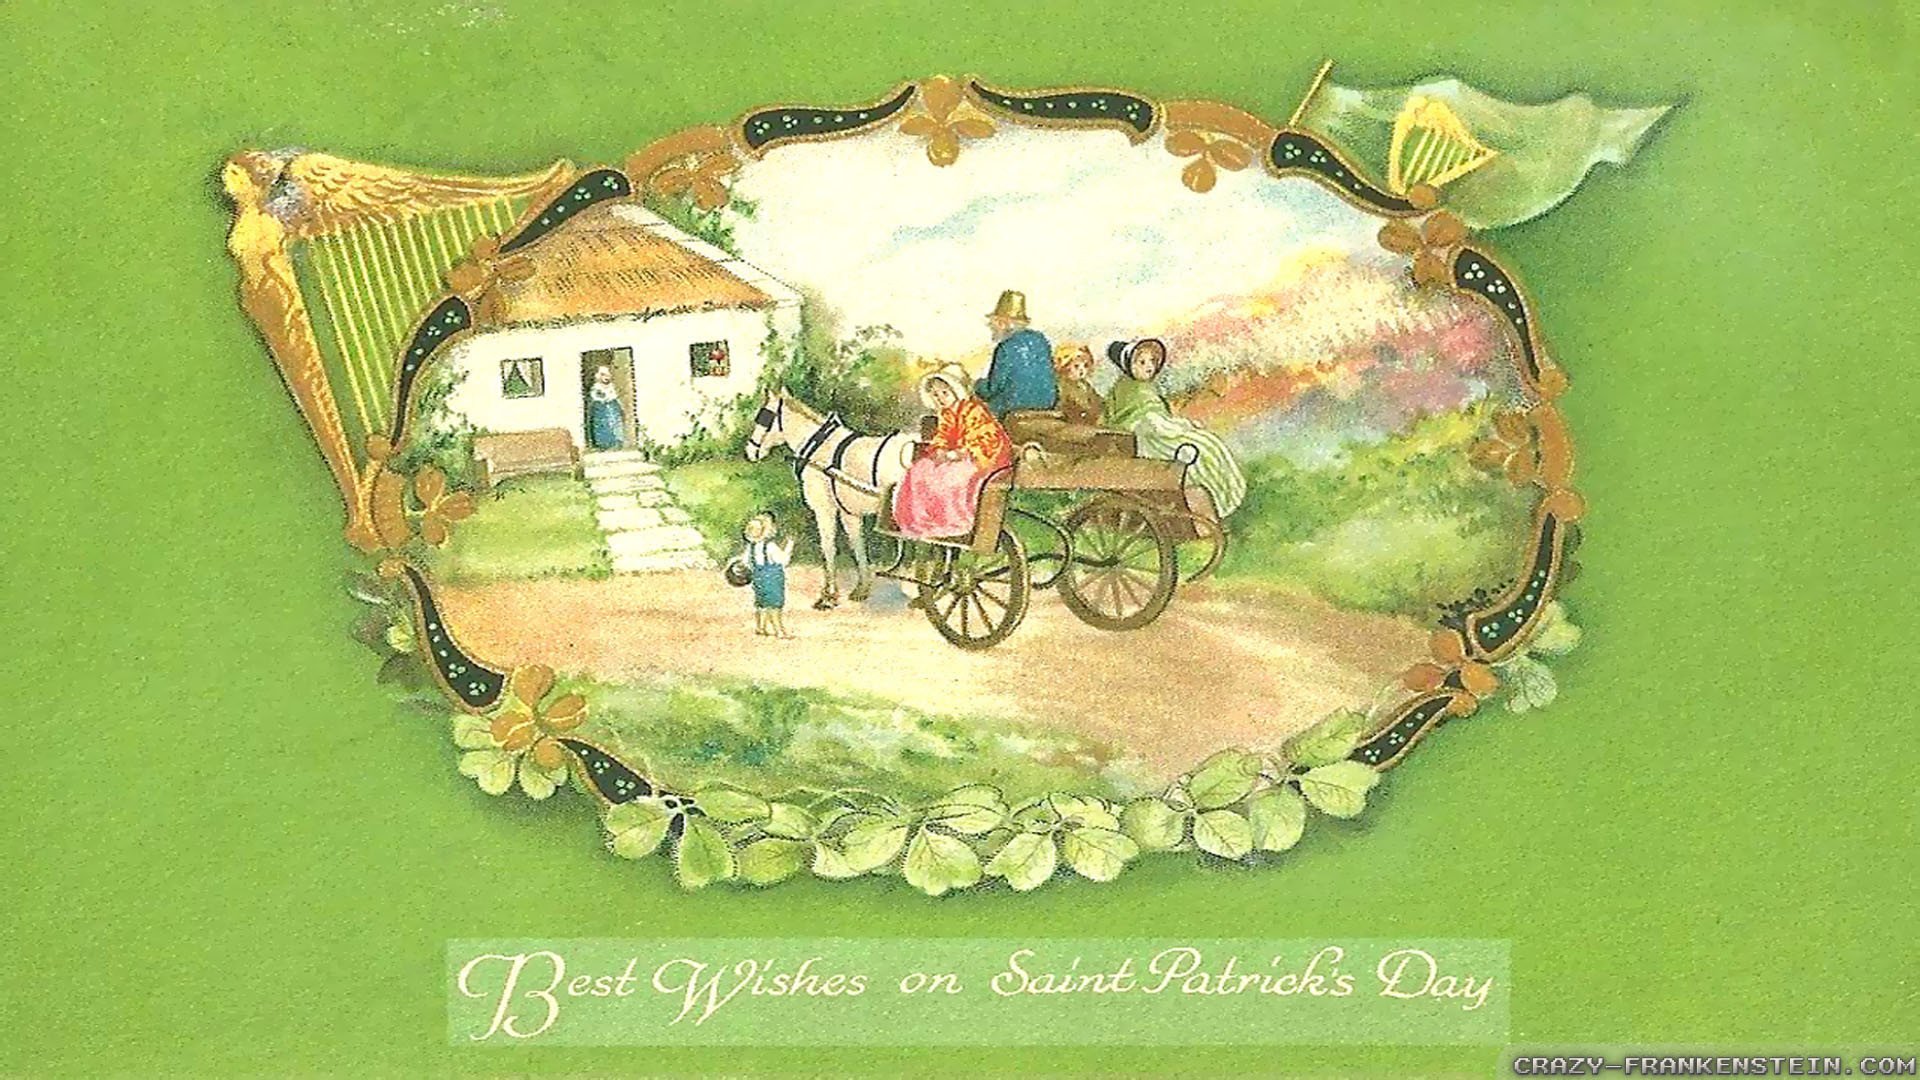 1920x1080 St Patricks Day Wallpaper Free 1920Ã1080